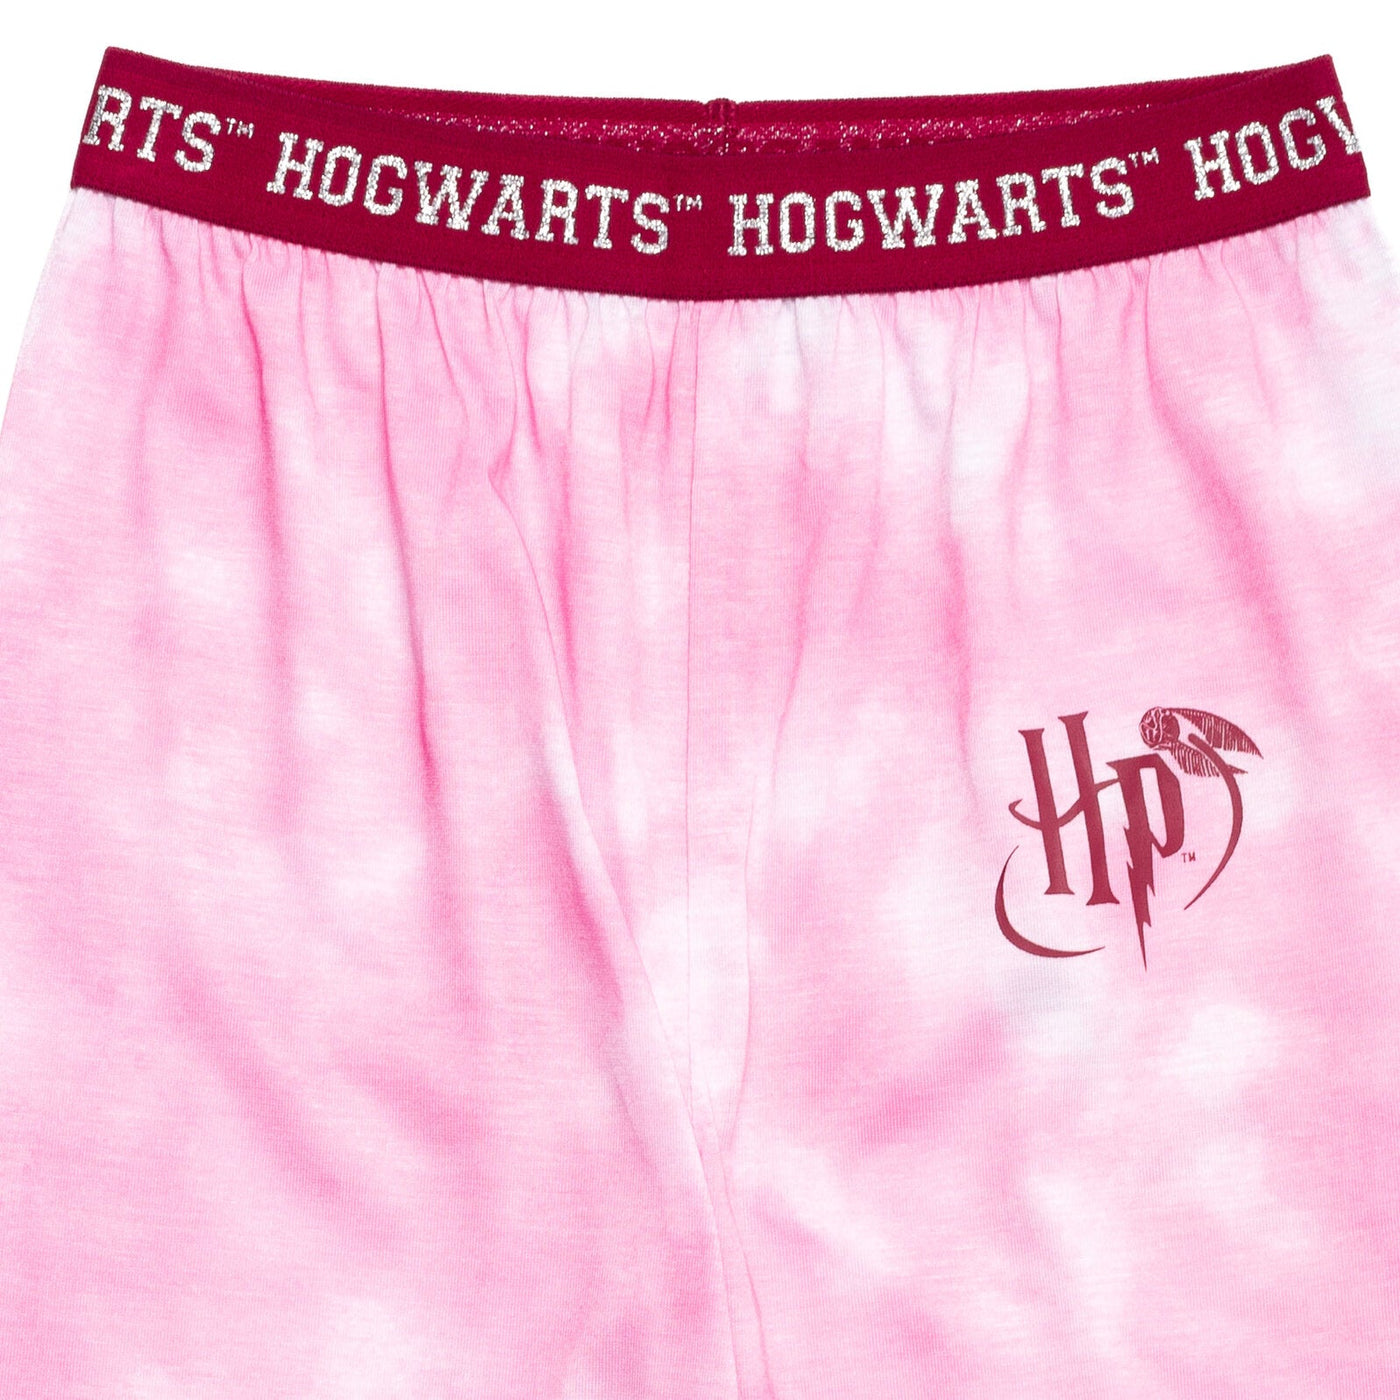 Harry Potter Pajama Shirt and Pants Sleep Set - imagikids